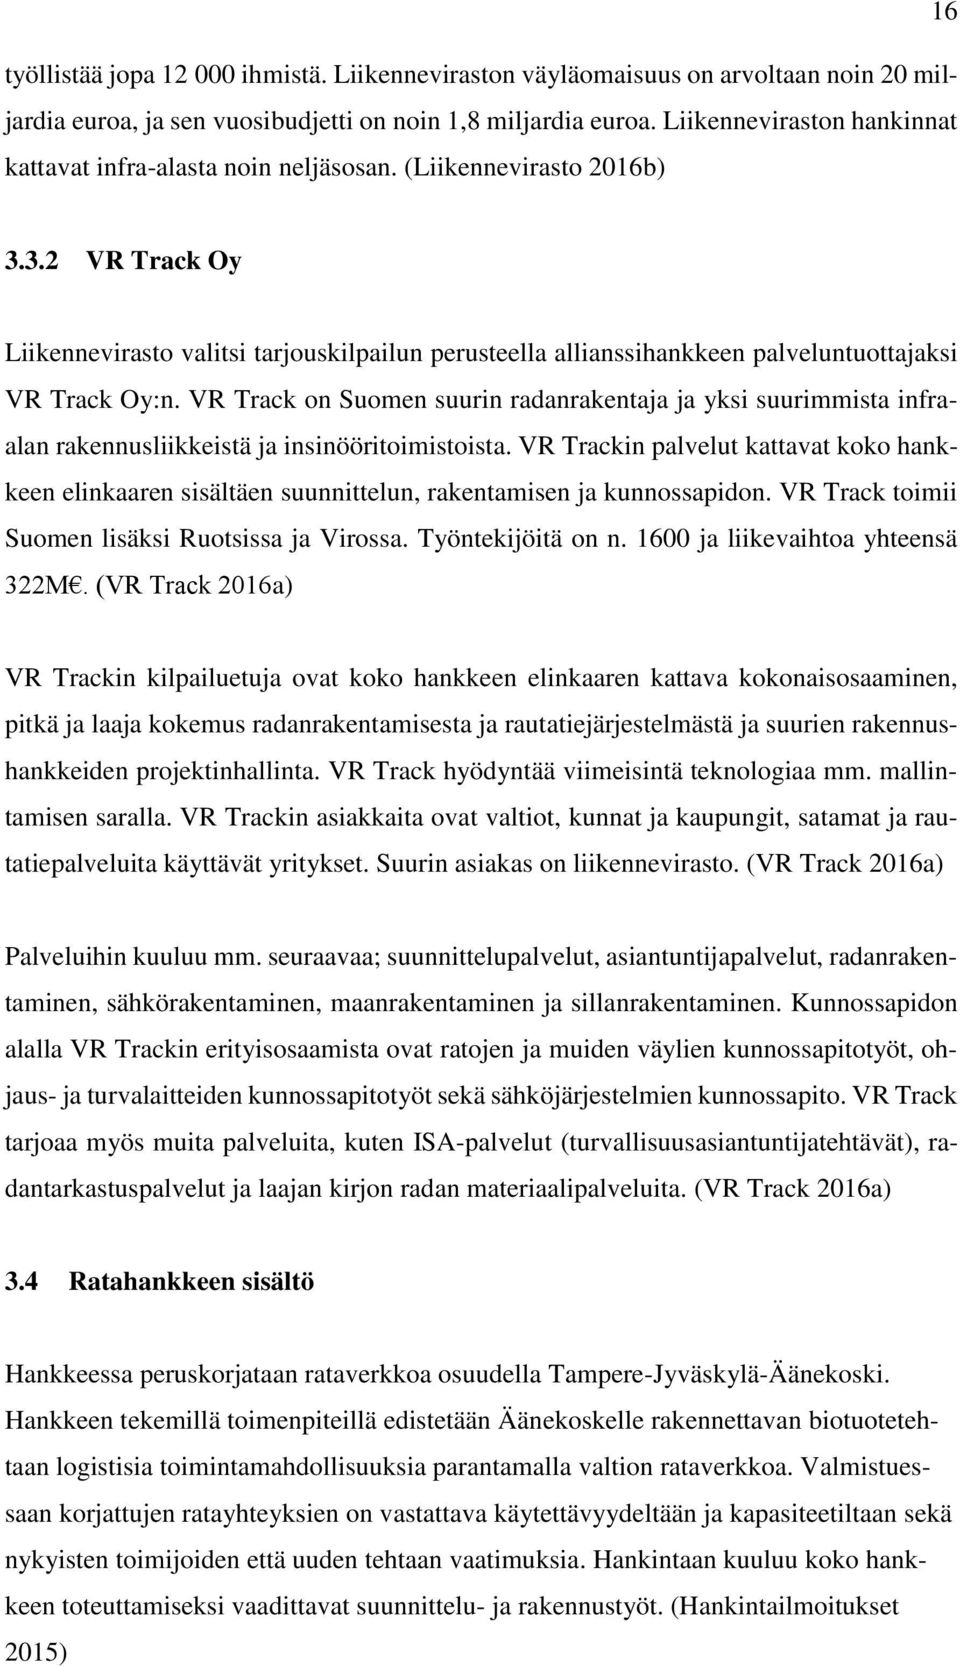 3.2 VR Track Oy Liikennevirasto valitsi tarjouskilpailun perusteella allianssihankkeen palveluntuottajaksi VR Track Oy:n.